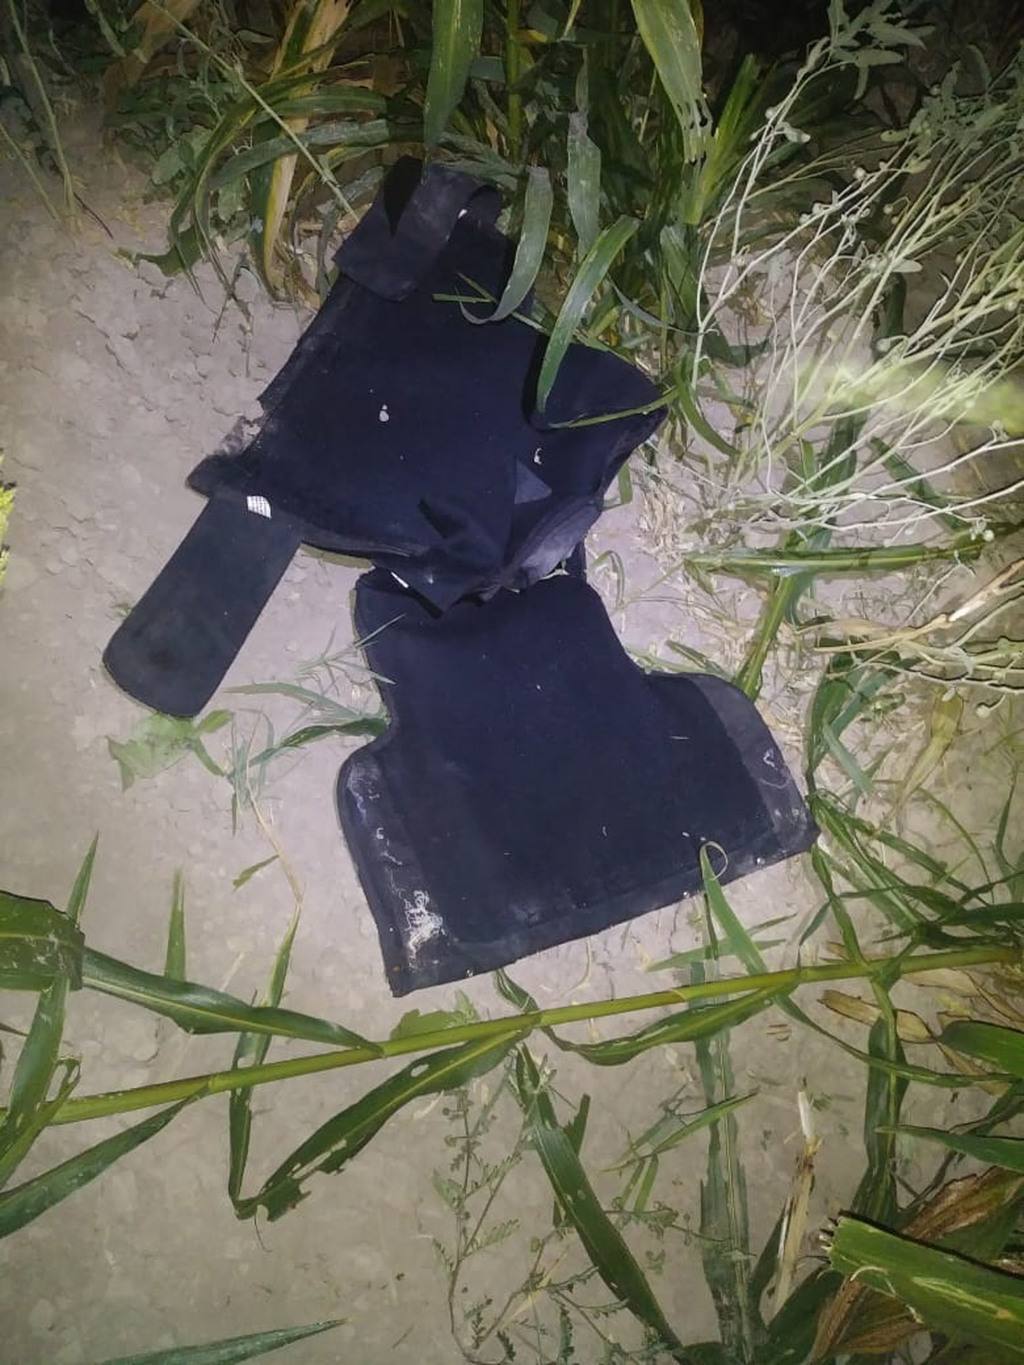 En los sembradíos los agentes realizaron una inspección, ubicando sobre un casquillo percutido un celular y un chaleco antibalas.